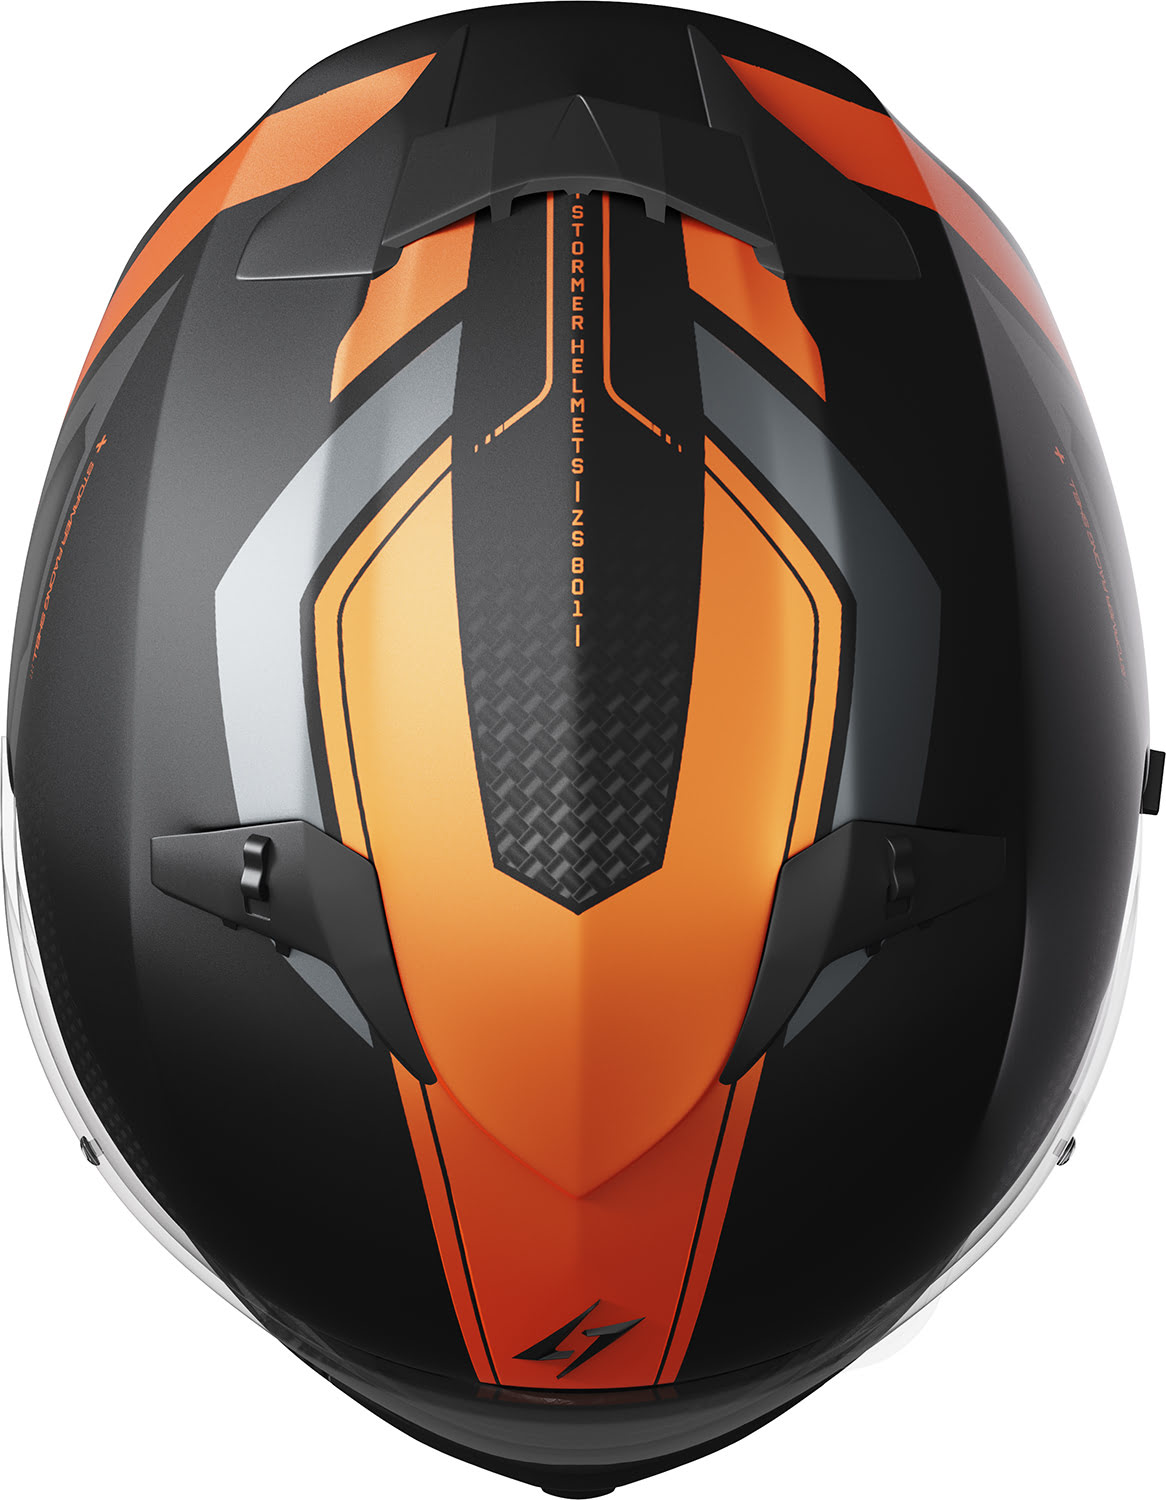 Helmet ZS 801 ELITE Neon Orange Metal Matt STORMER 